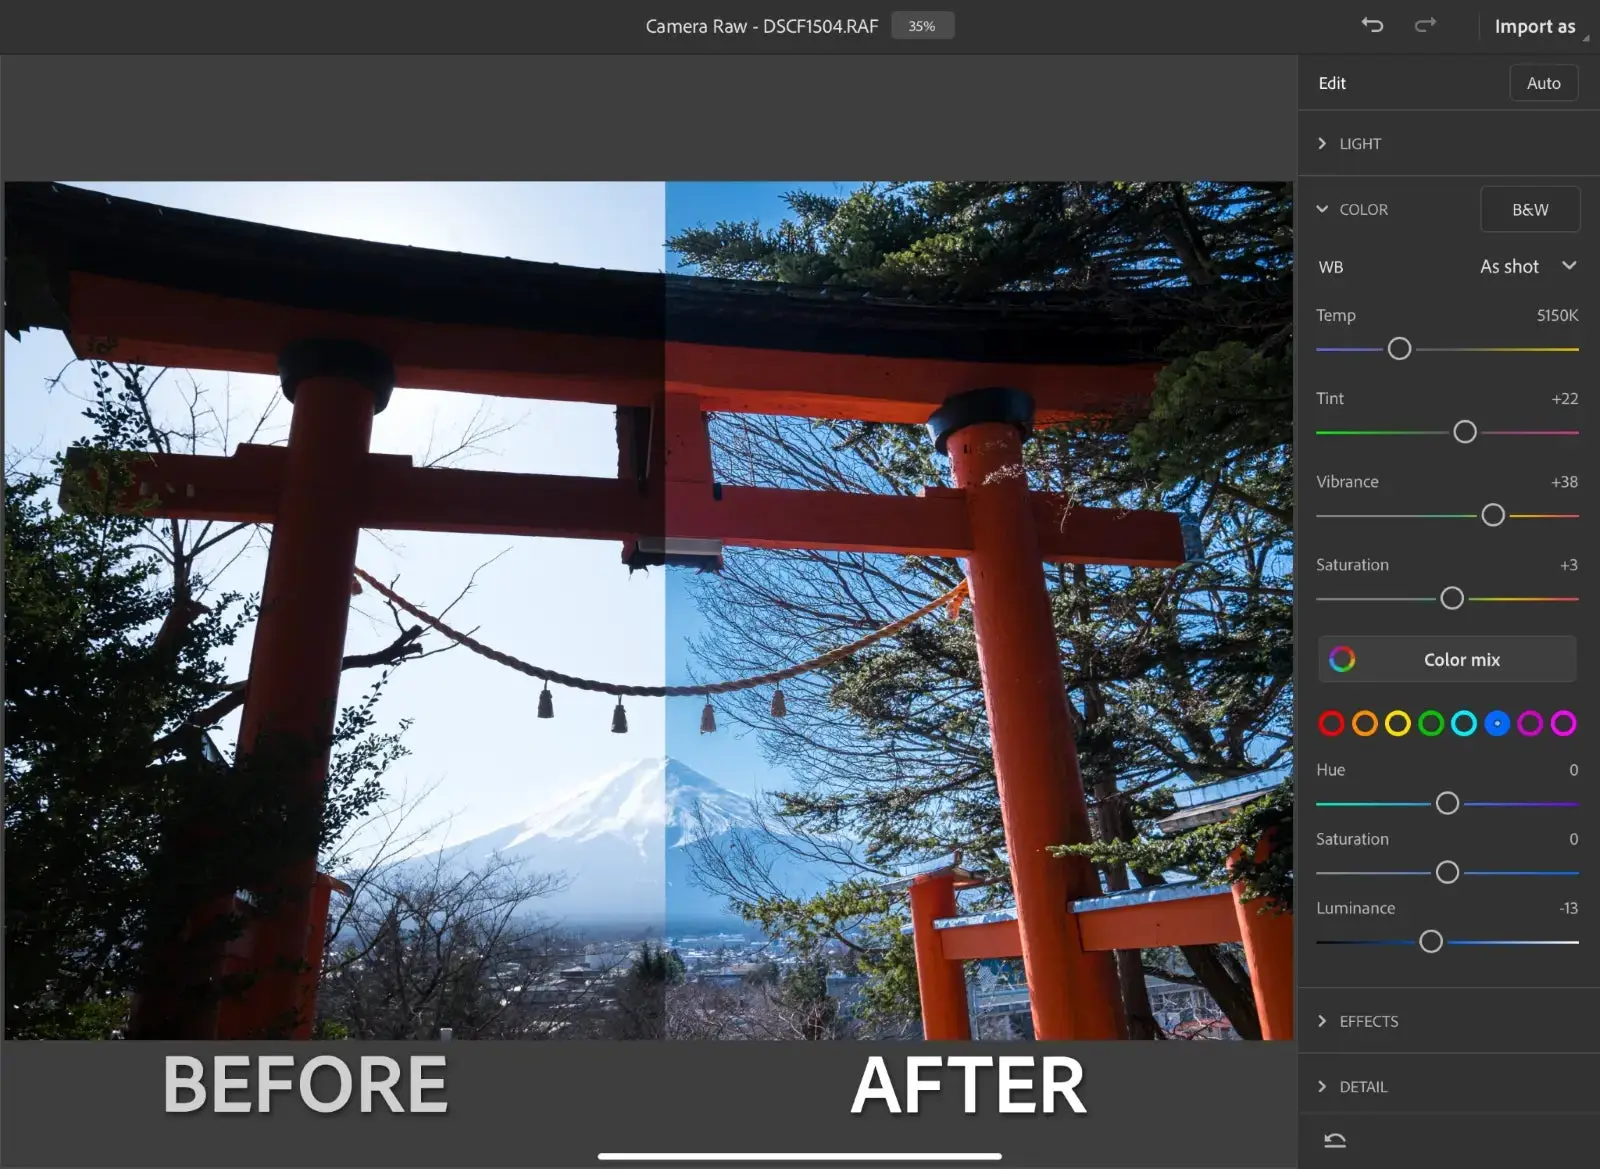 Interface do Photoshop no iPad com uma foto que compara o antes e o depois da função de edição com a câmera raw